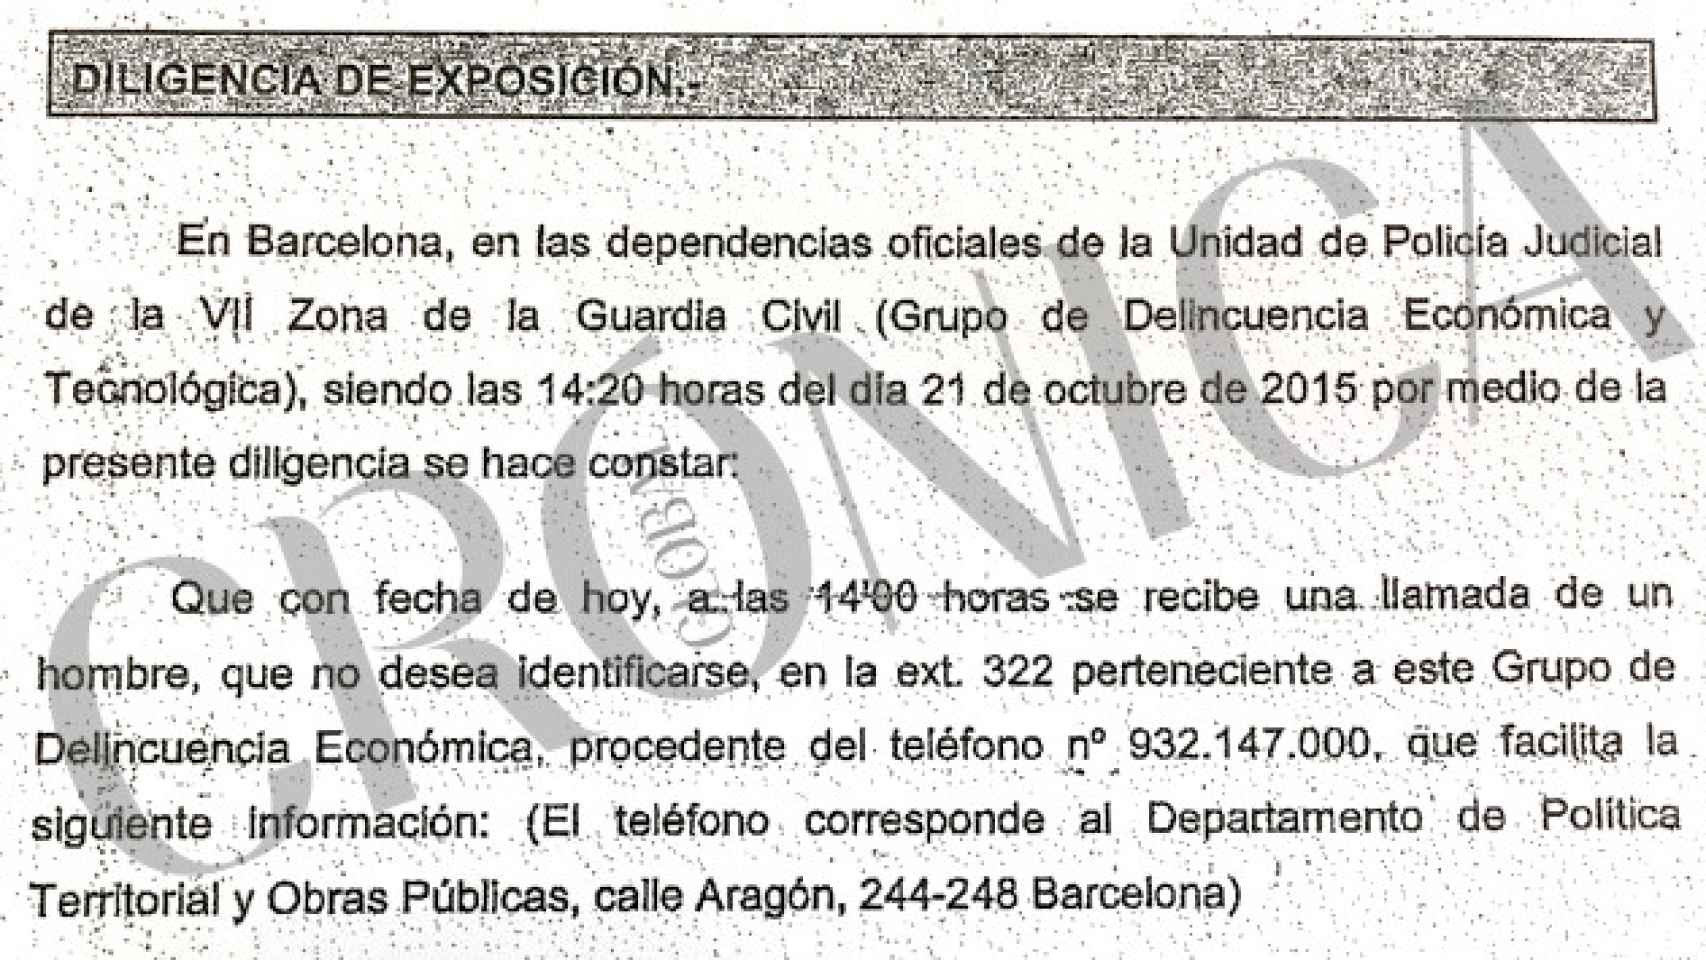 Informe de la Guadia Civil, obrante en el sumario del caso 3% / CG